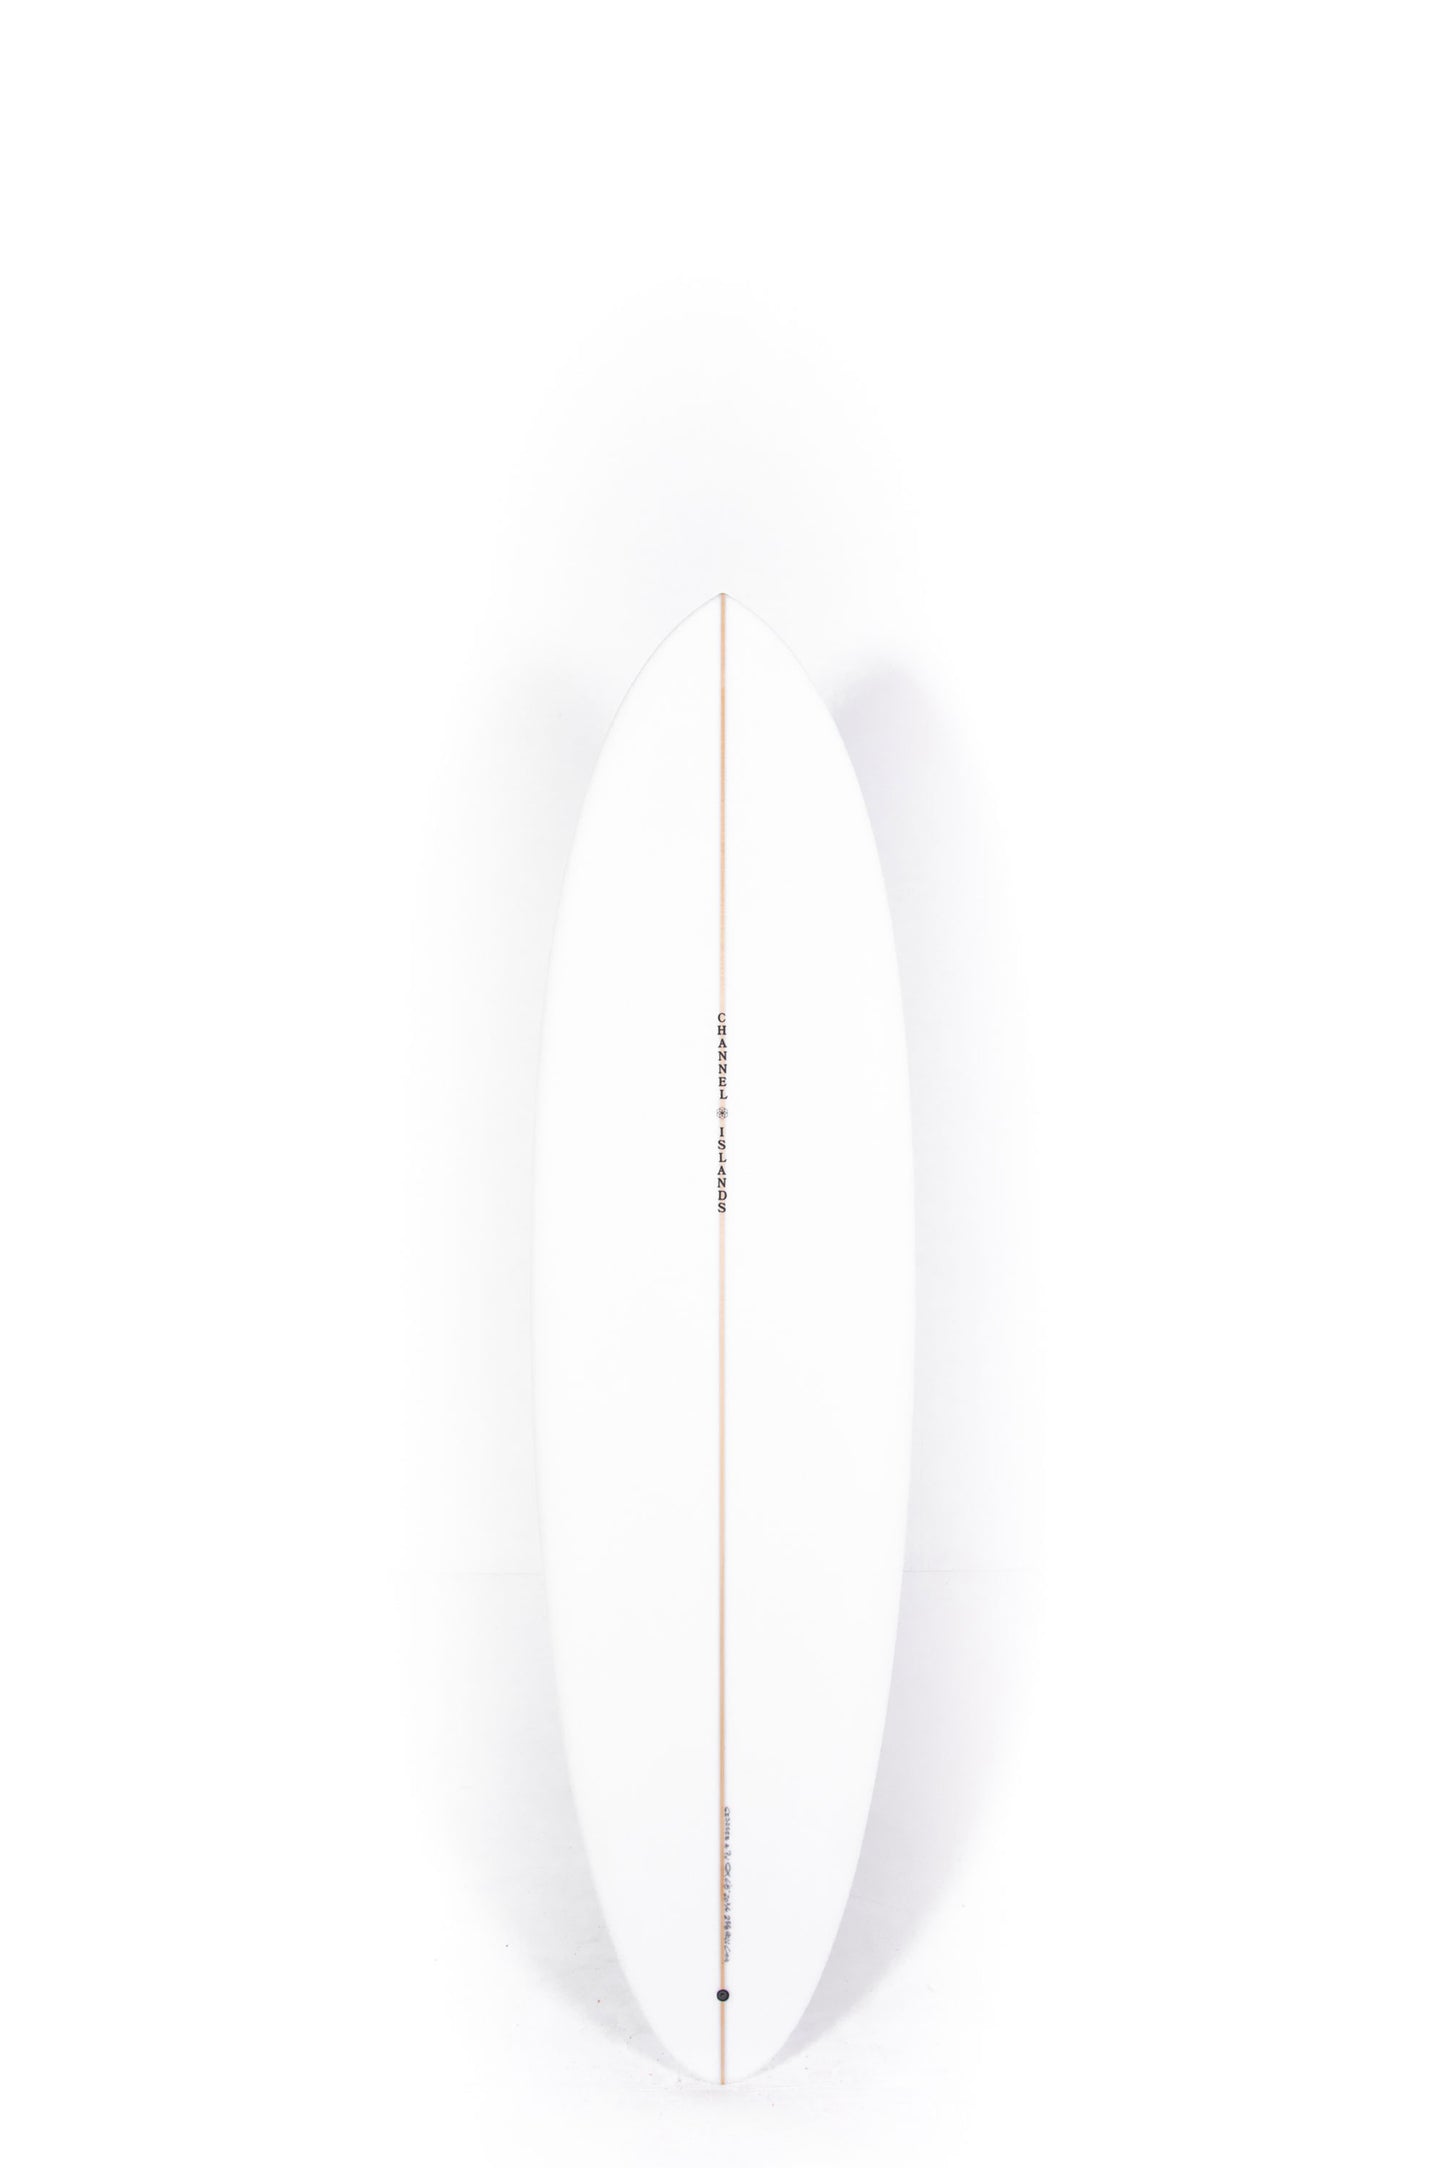 Pukas Surf Shop - Channel Islands - CI MID - 6'8" x 20 3/4 x 2 5/8 - 40,20L - CI32553